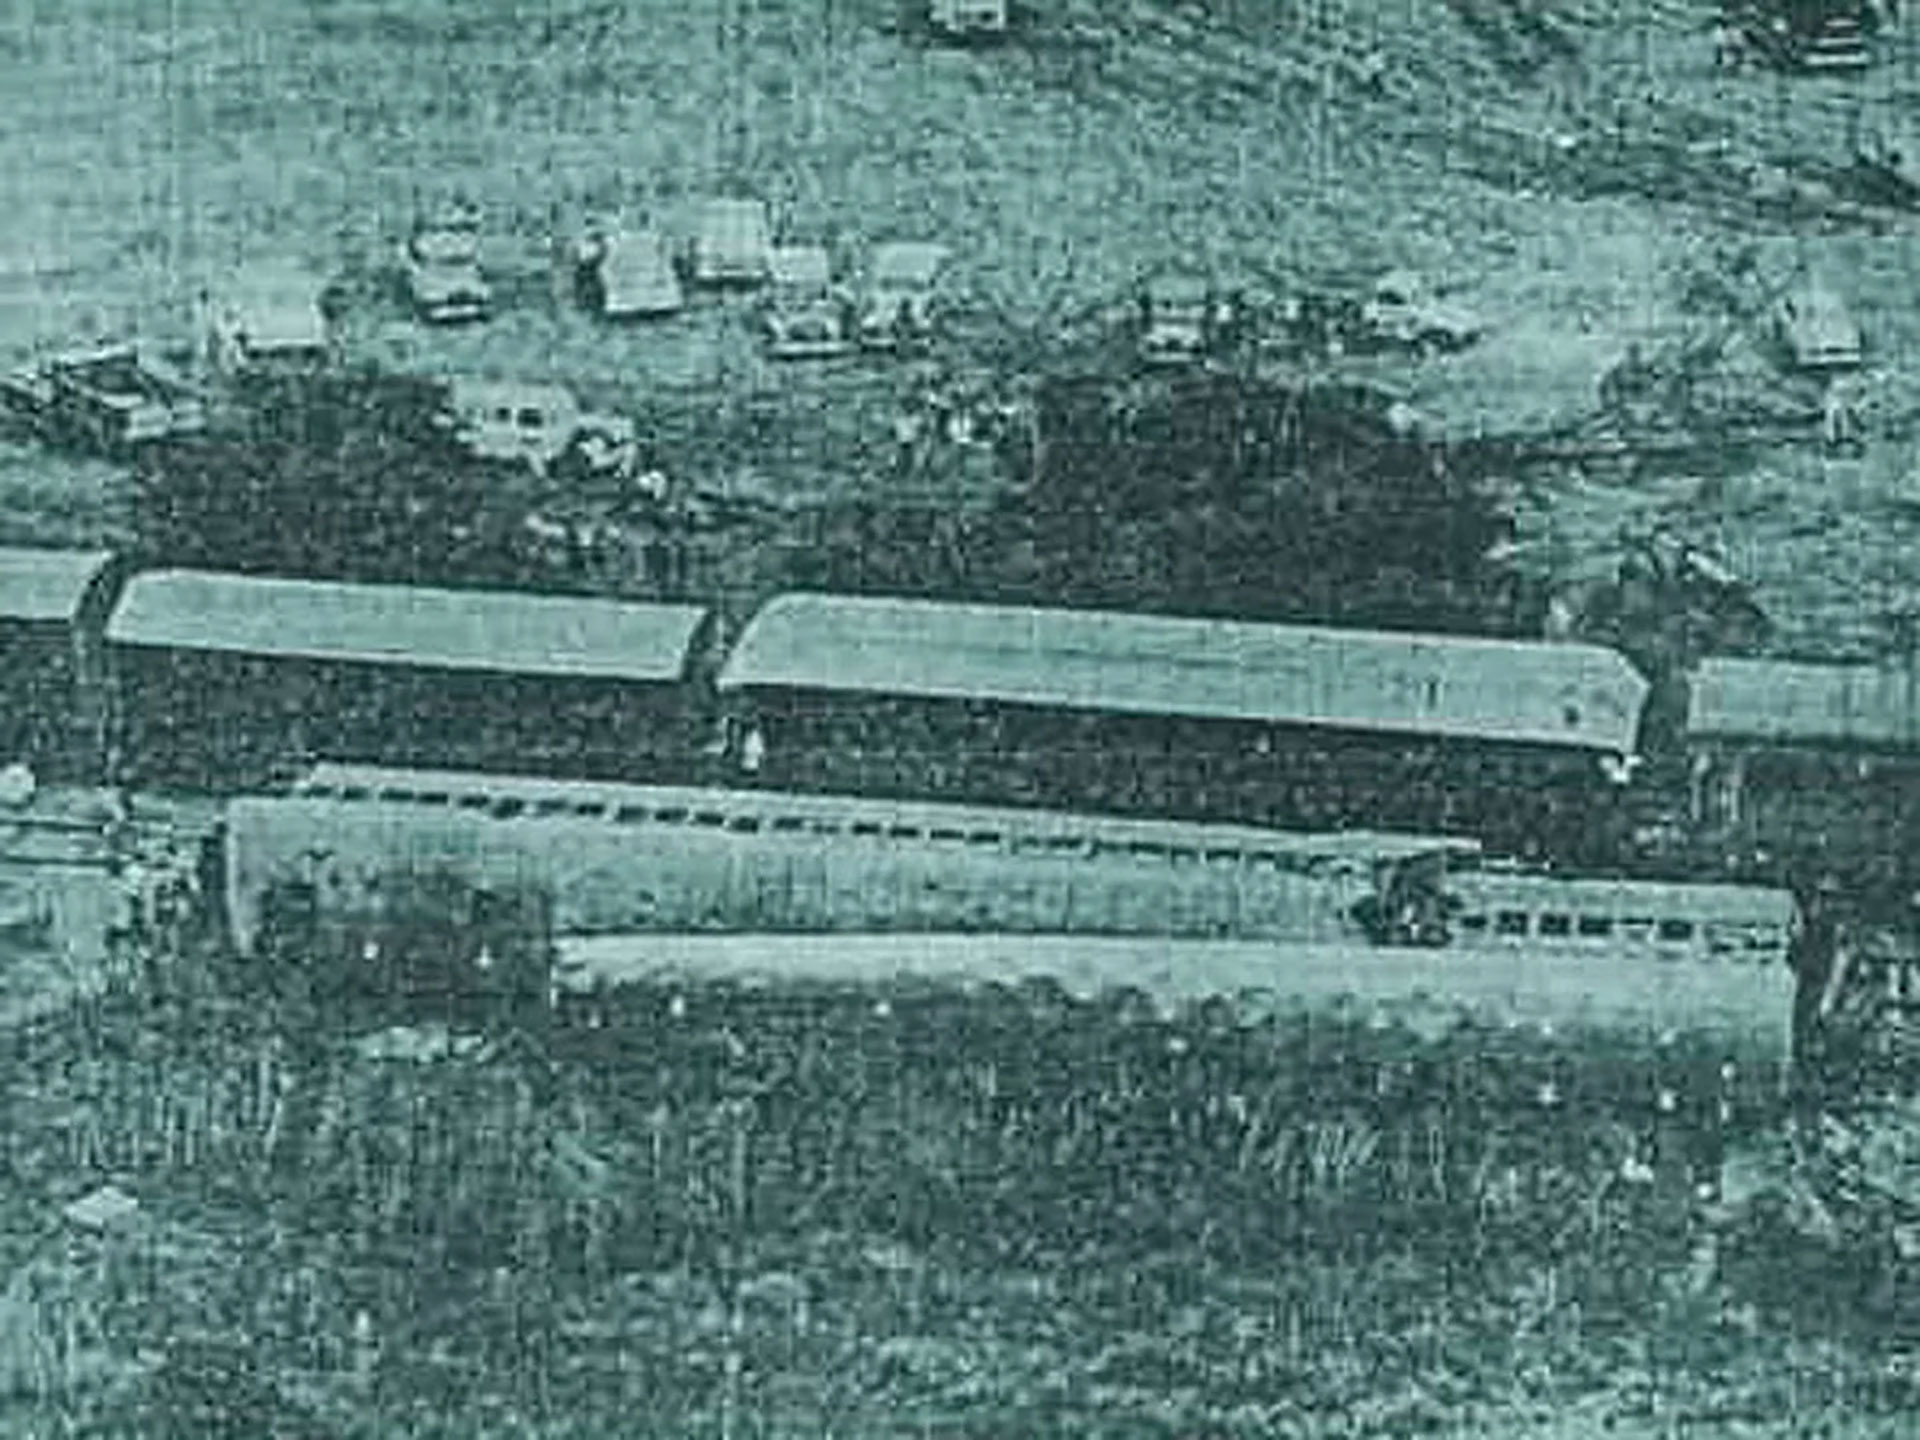 “El Zarateño”, que iba hacia Retiro, llevaba 1090 pasajeros. El tren que venía desde Tucumán lo impactó a 100 kilómetros por hora cuando estaba detenido